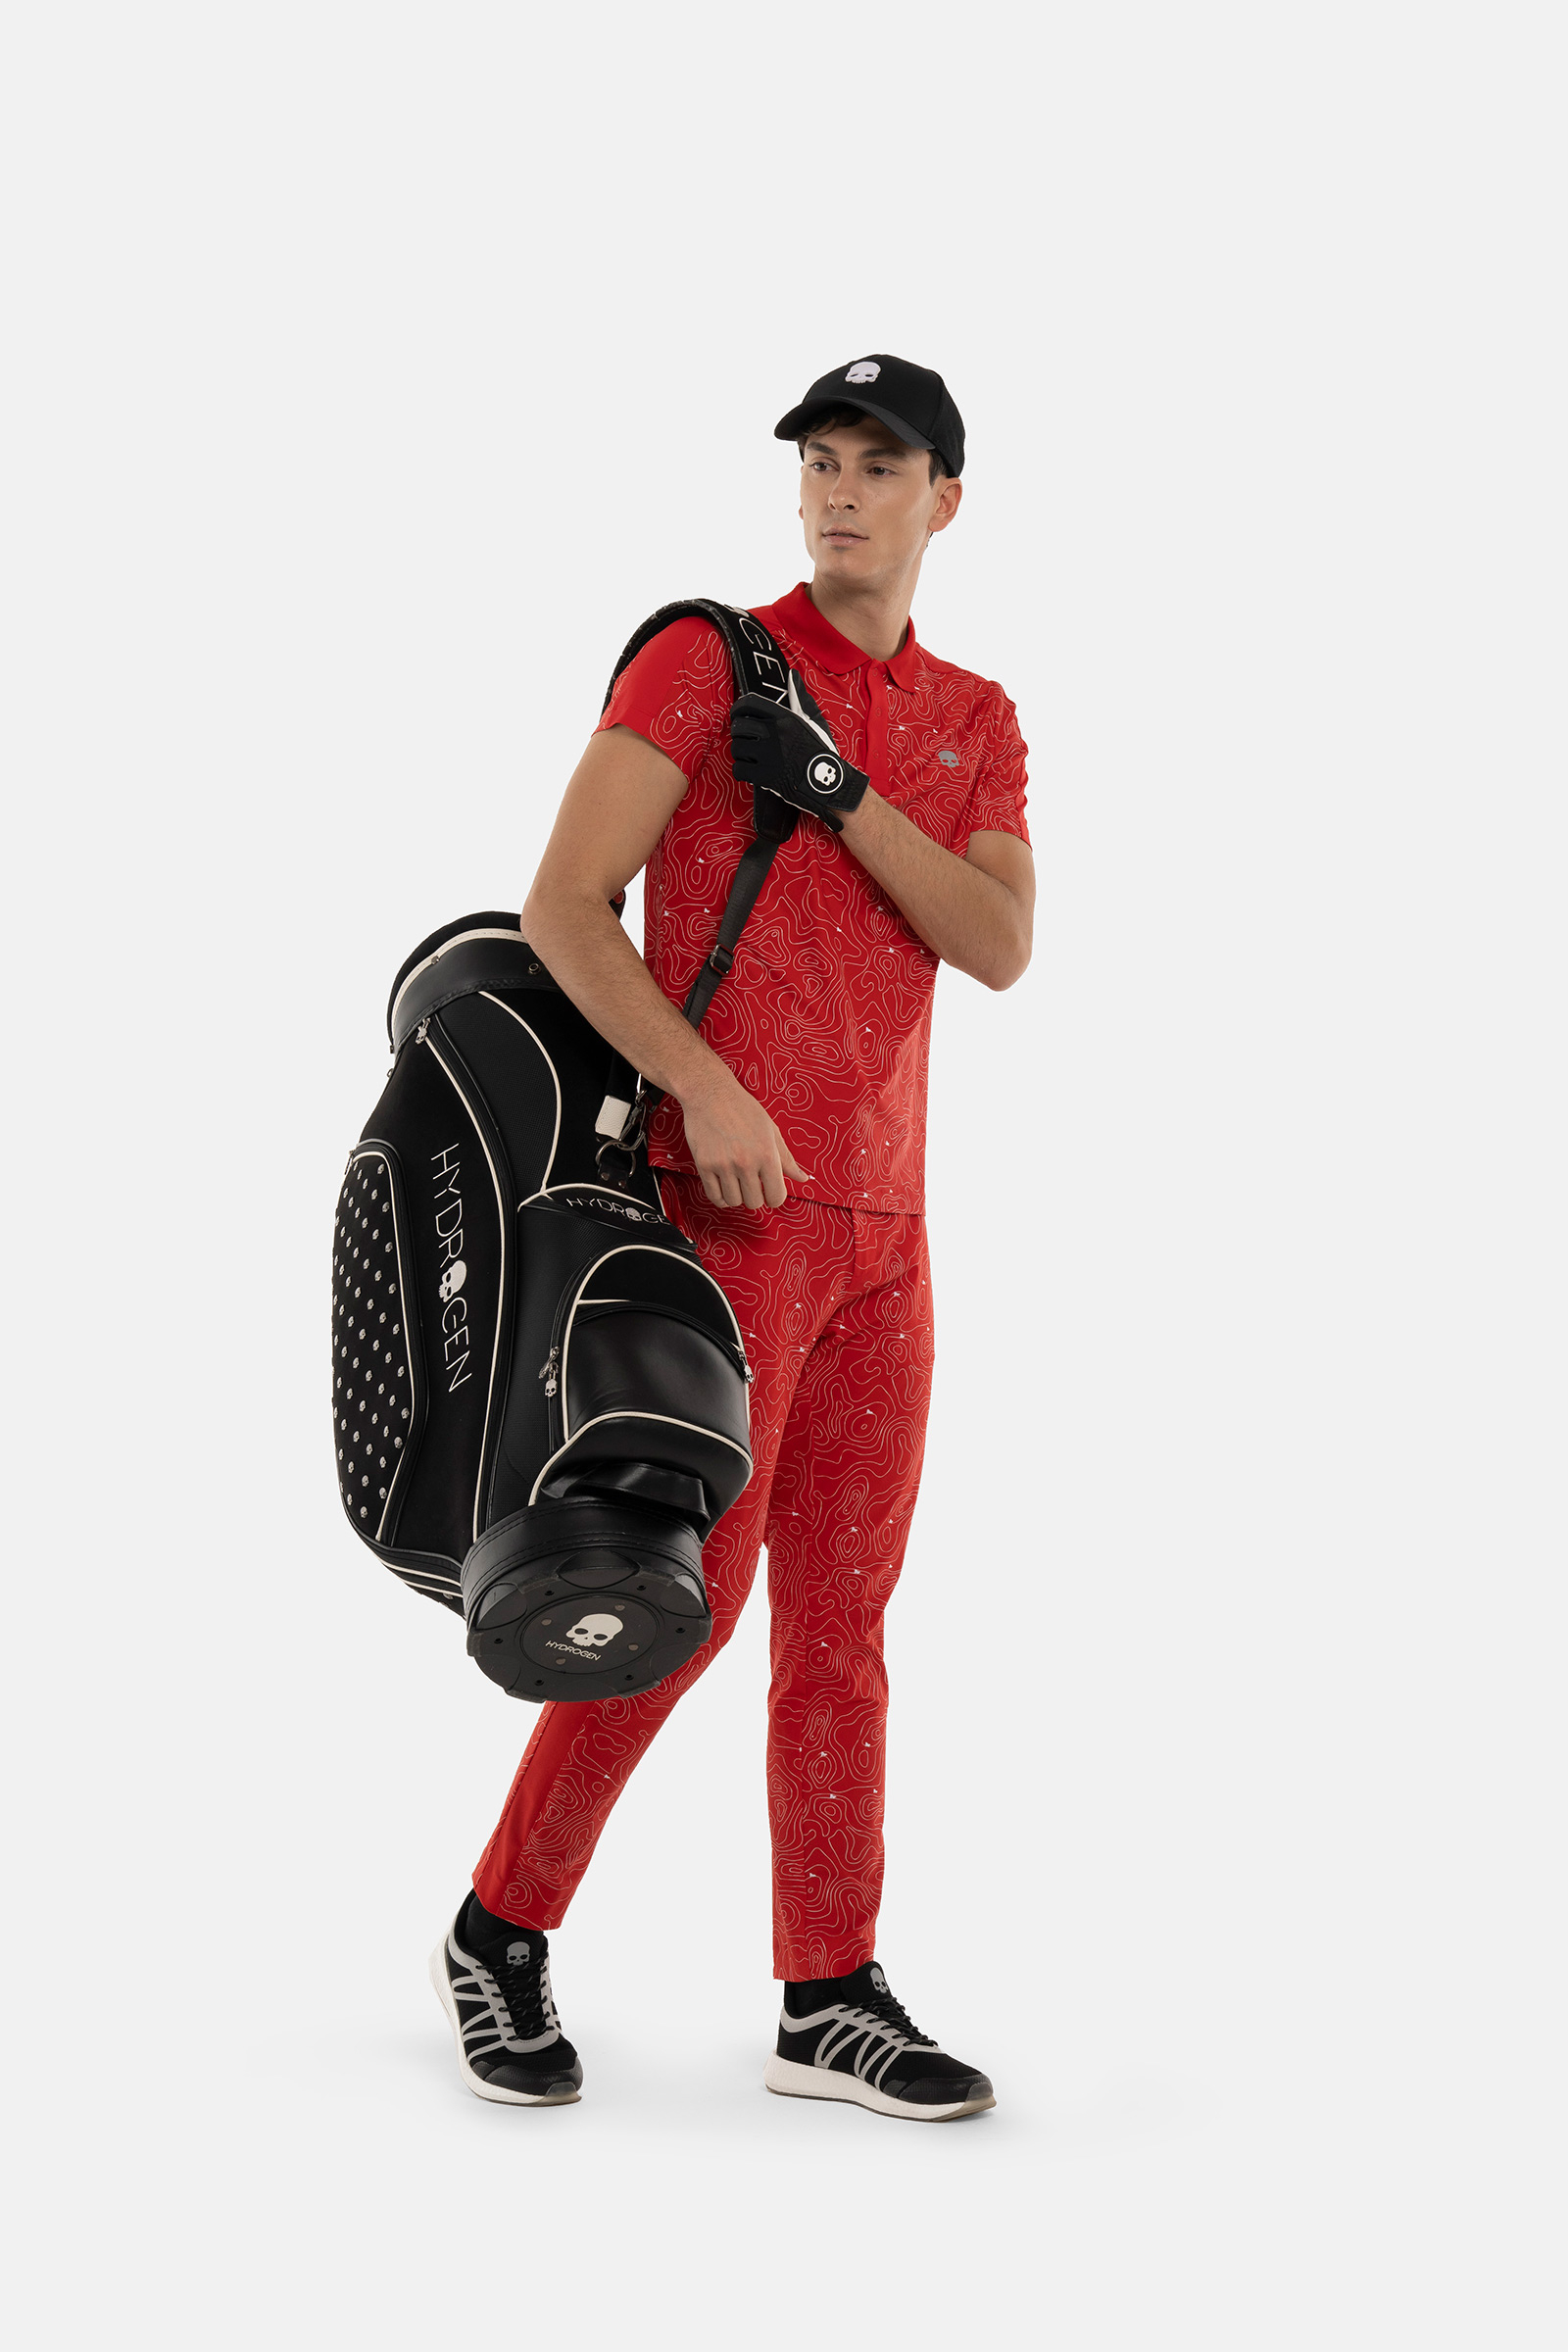 POLO TECNICA A MANICA CORTA - RED - Abbigliamento sportivo | Hydrogen